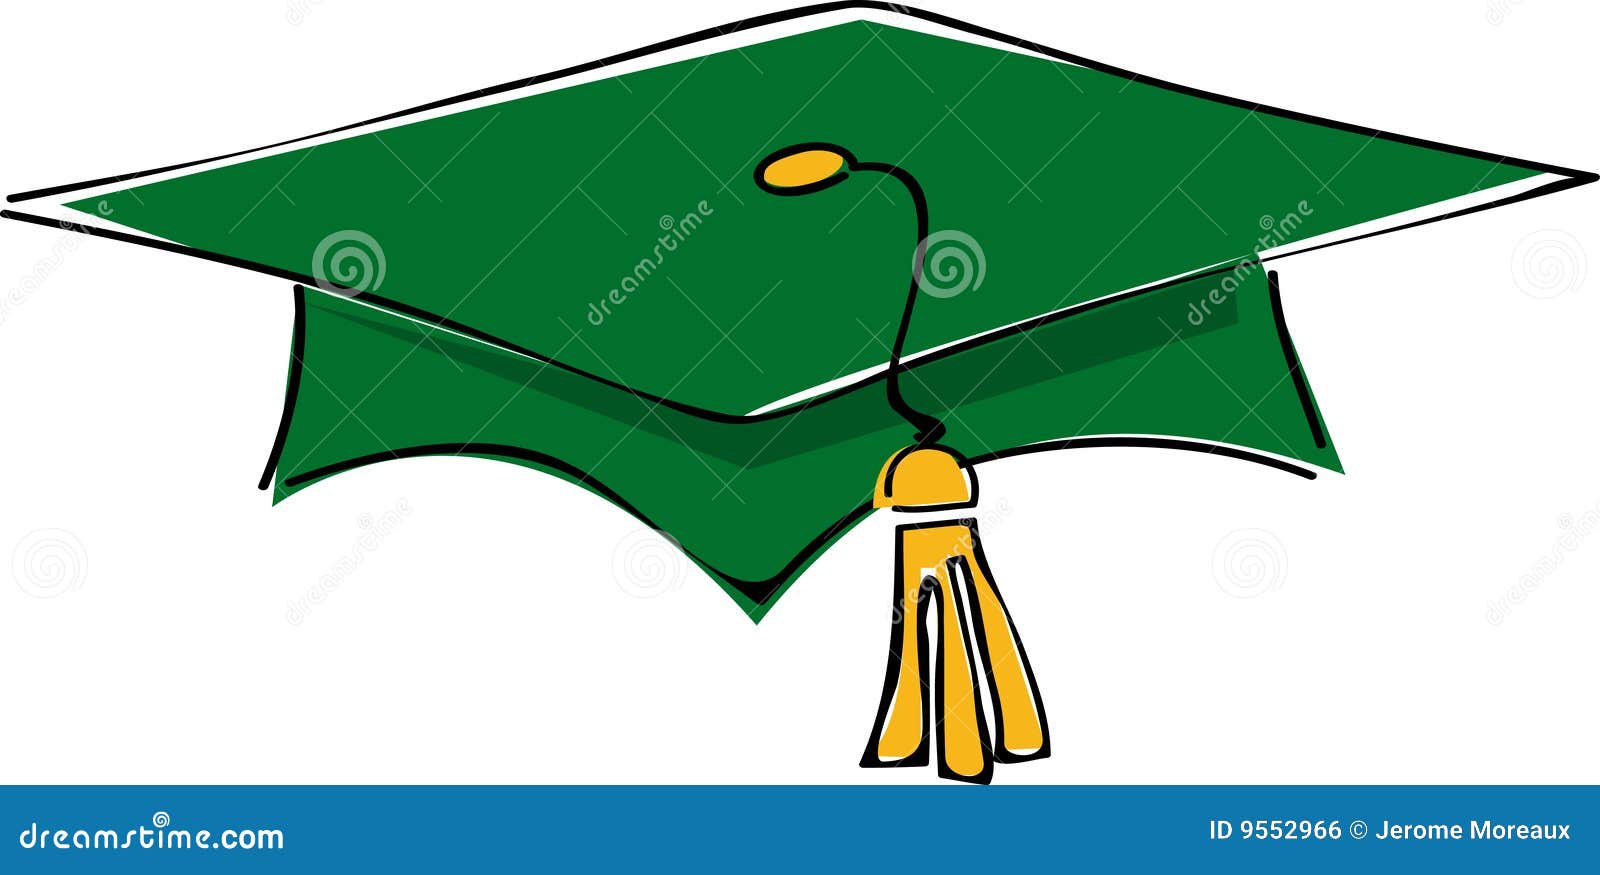 Mortar board stock illustration. Illustration of school - 9552966